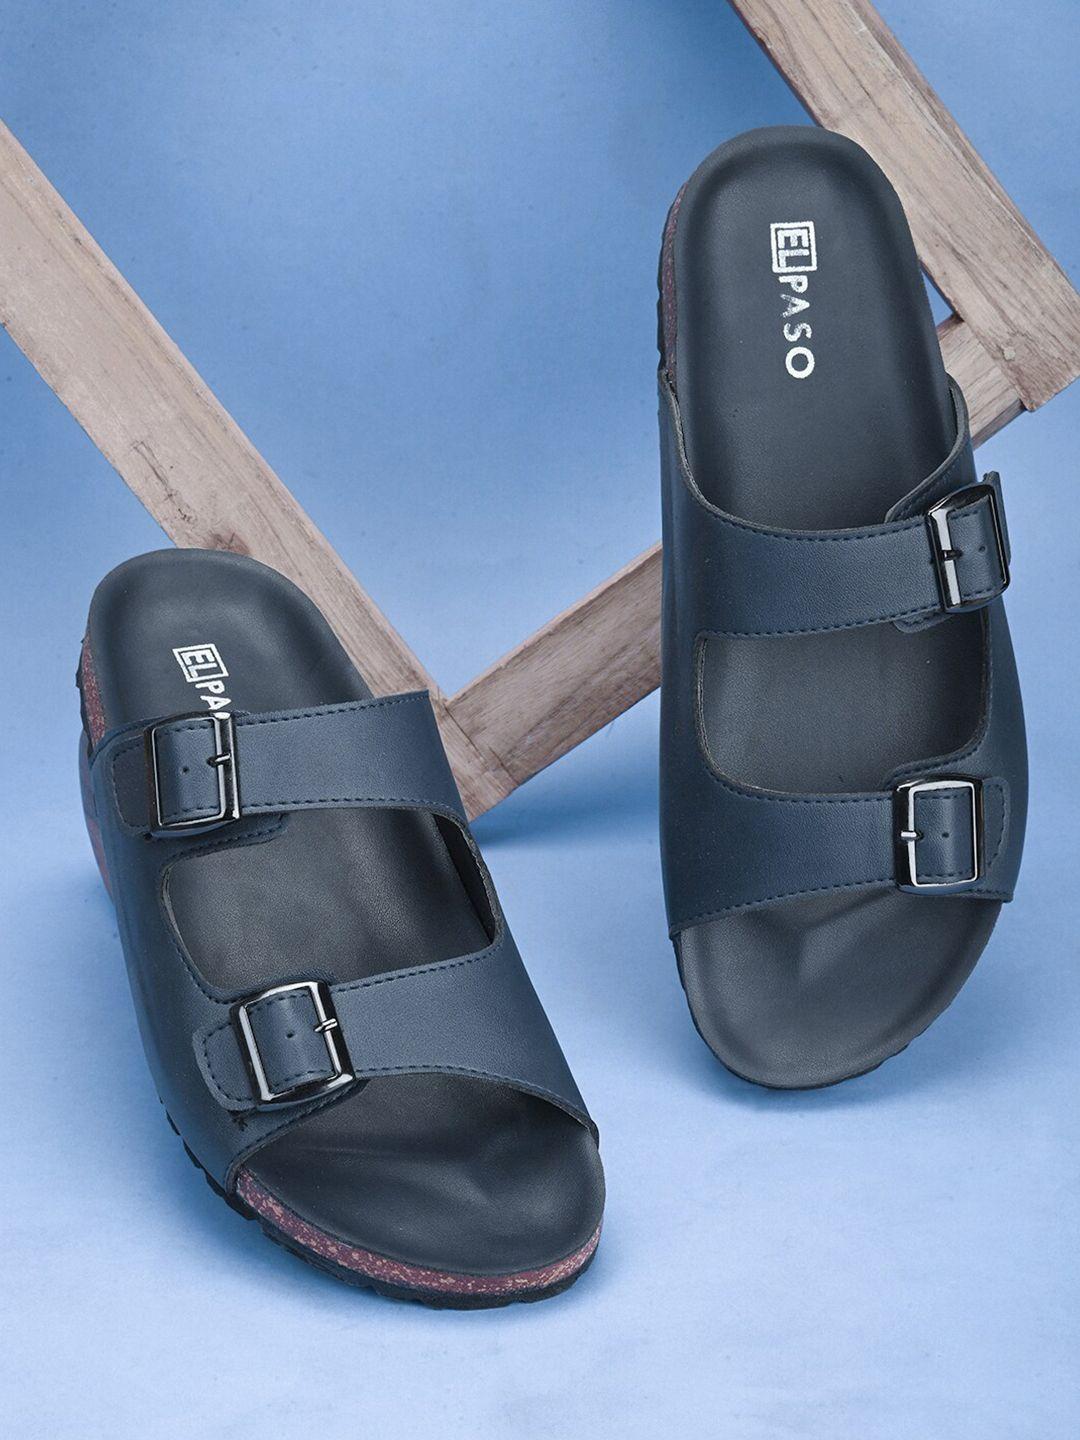 el-paso-men-open-toe-comfort-sandals-with-buckle-detail